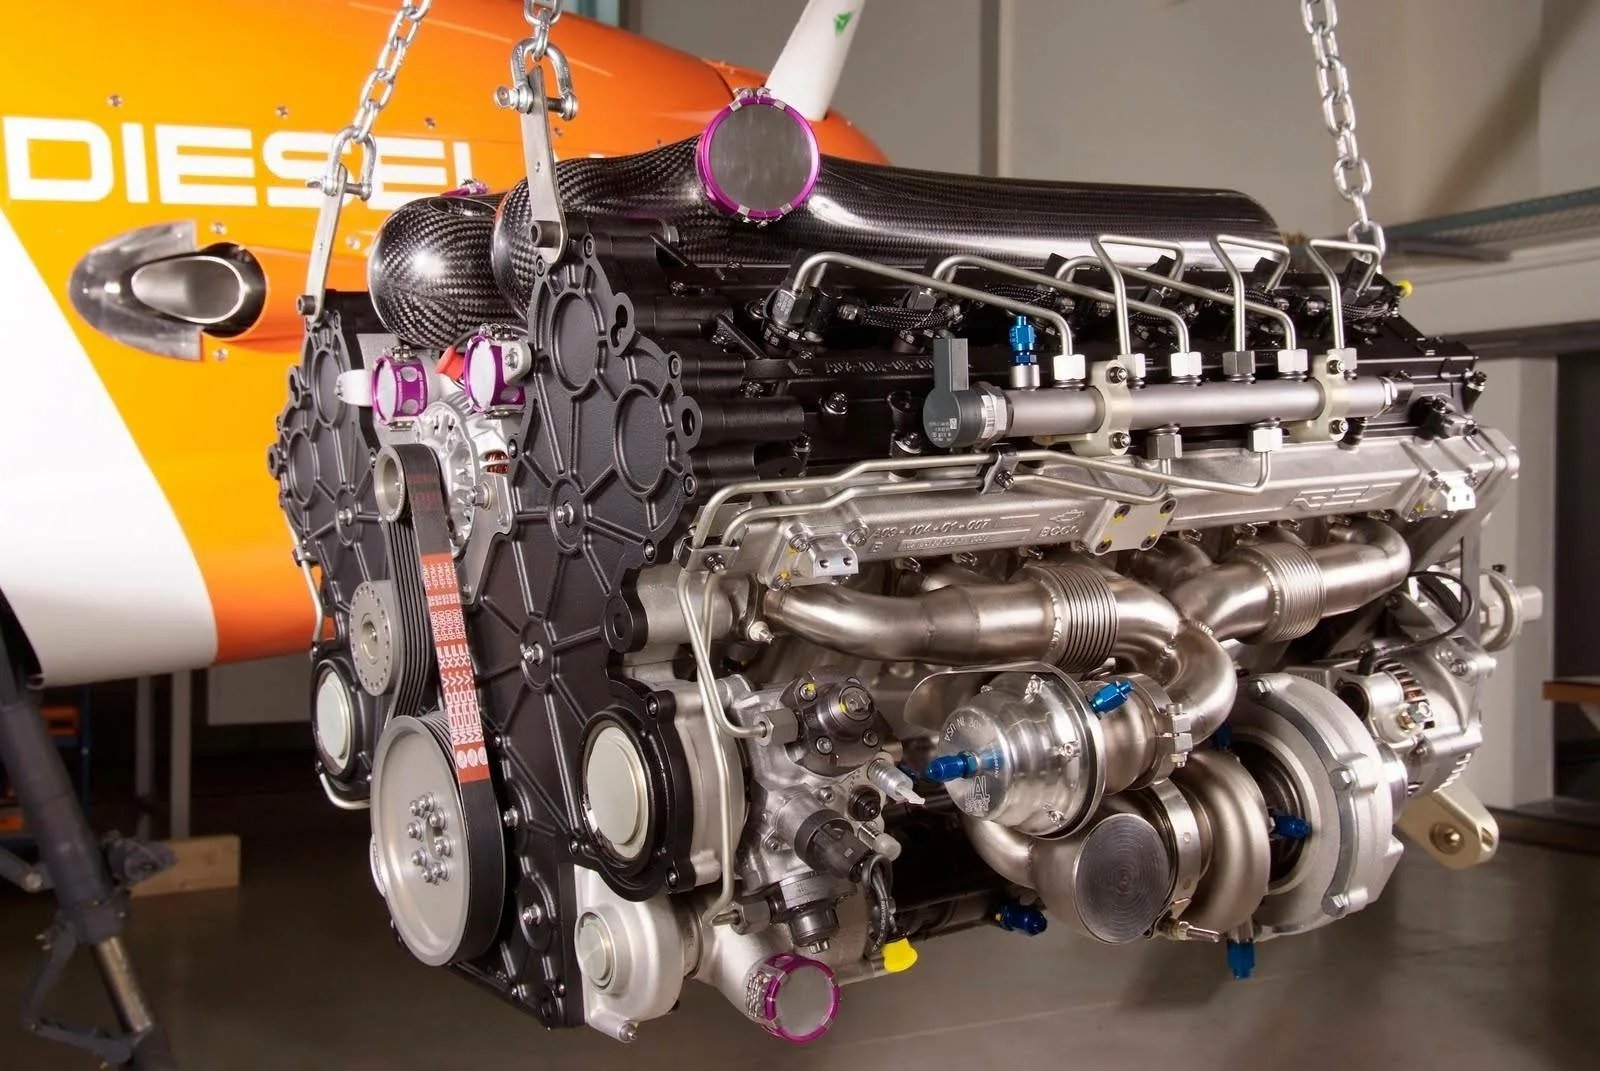 Двигатель на автомобиле является. Двигатель Red a03 v12. Red a03 авиационный двигатель. Perkins CV двигатель v12. Дизельный двигатель внутреннего сгорания.